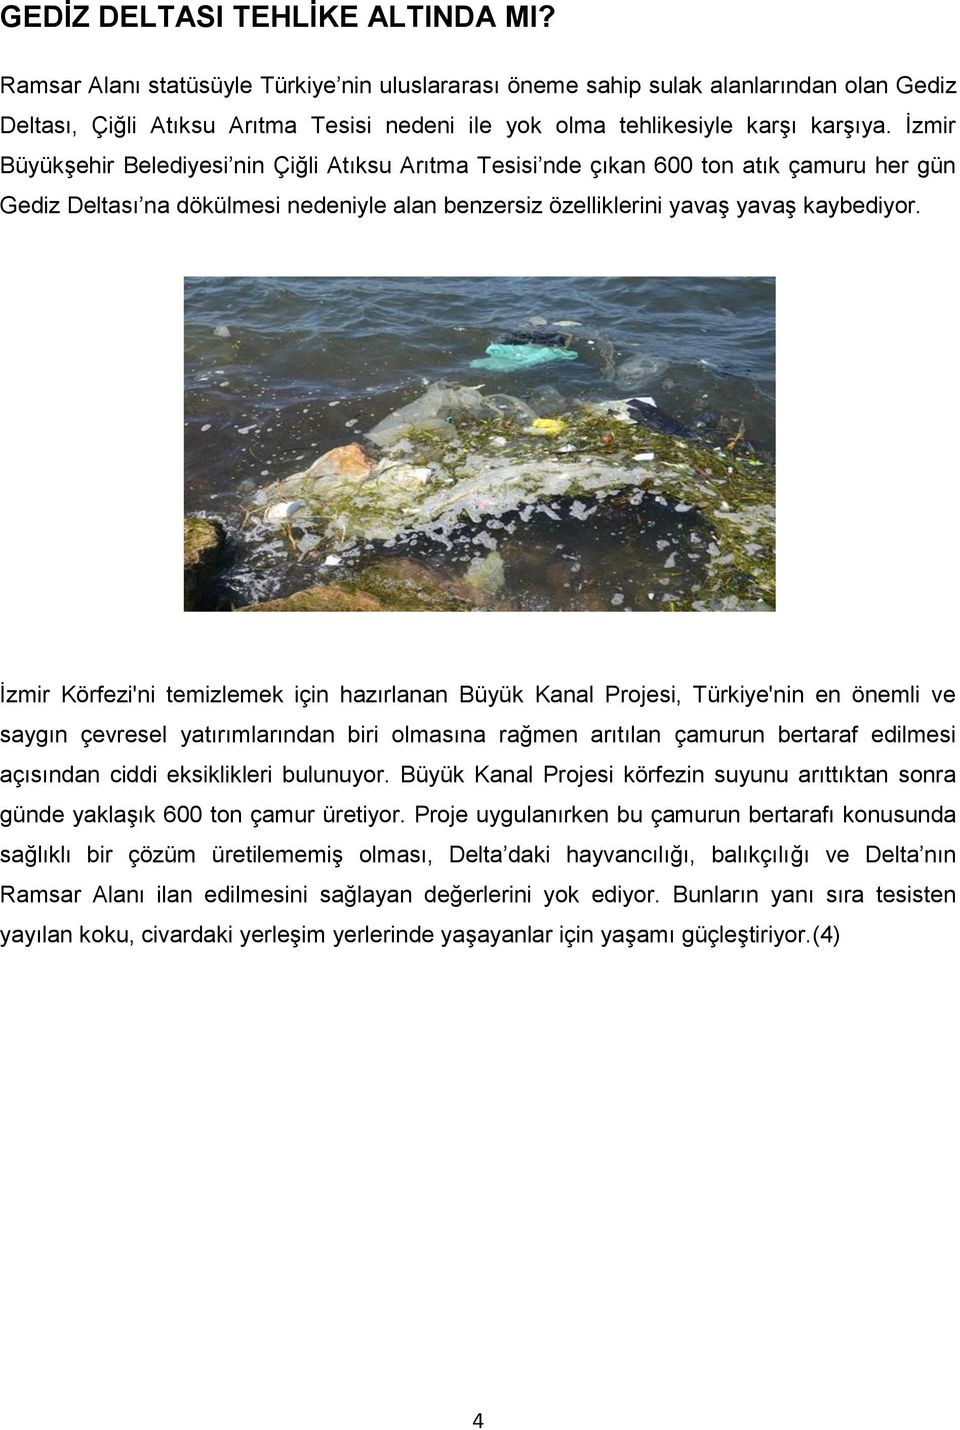 İzmir Büyükşehir Belediyesi nin Çiğli Atıksu Arıtma Tesisi nde çıkan 600 ton atık çamuru her gün Gediz Deltası na dökülmesi nedeniyle alan benzersiz özelliklerini yavaş yavaş kaybediyor.